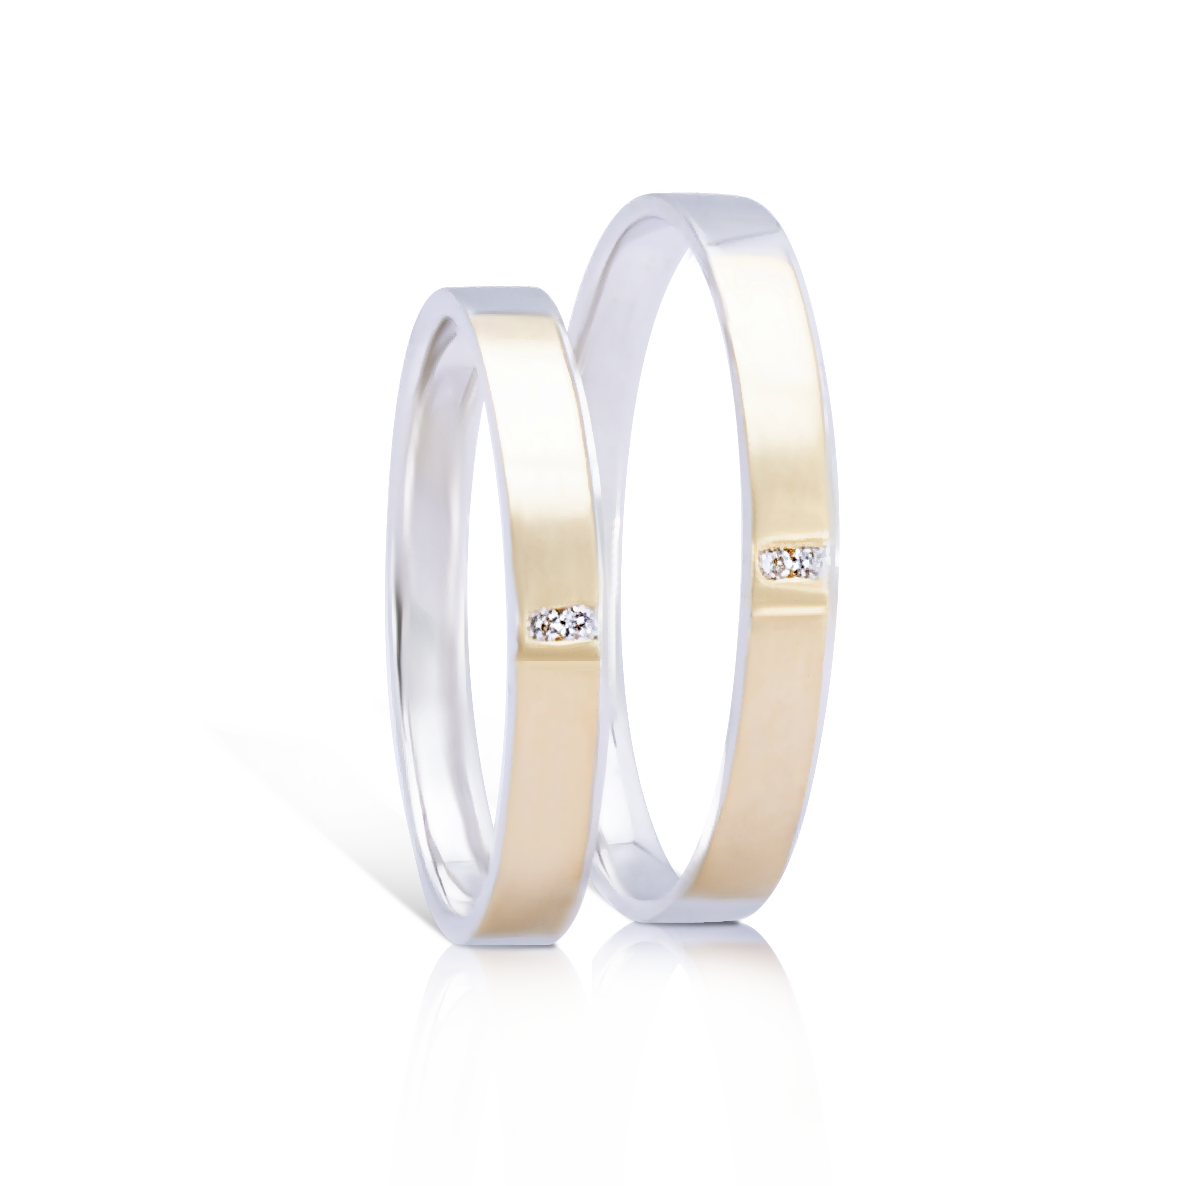 Cặp nhẫn cưới Viva forever – một mẫu thiết kế đơn giản và nhẹ nhàng, giành cho những ai yêu thích sự đơn giản, sự bền chặt và gắn bó trong tình yêu.